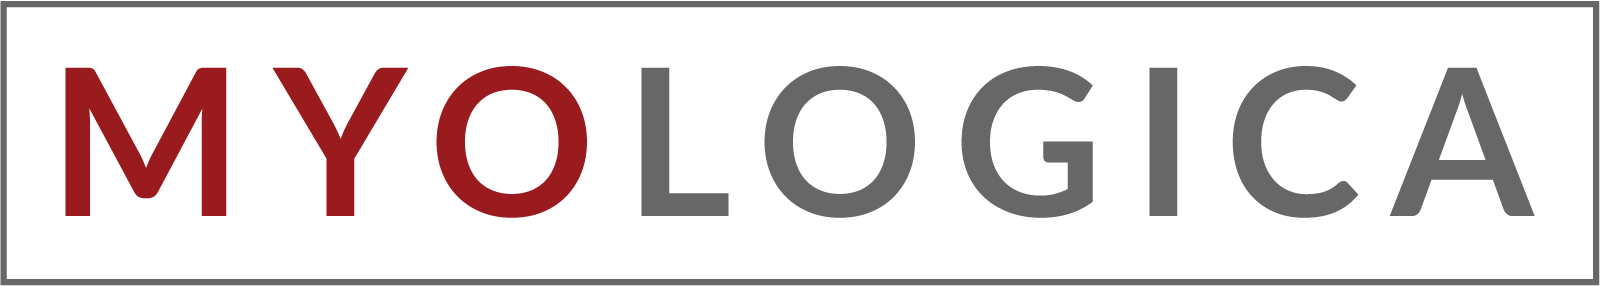 Myologica logo